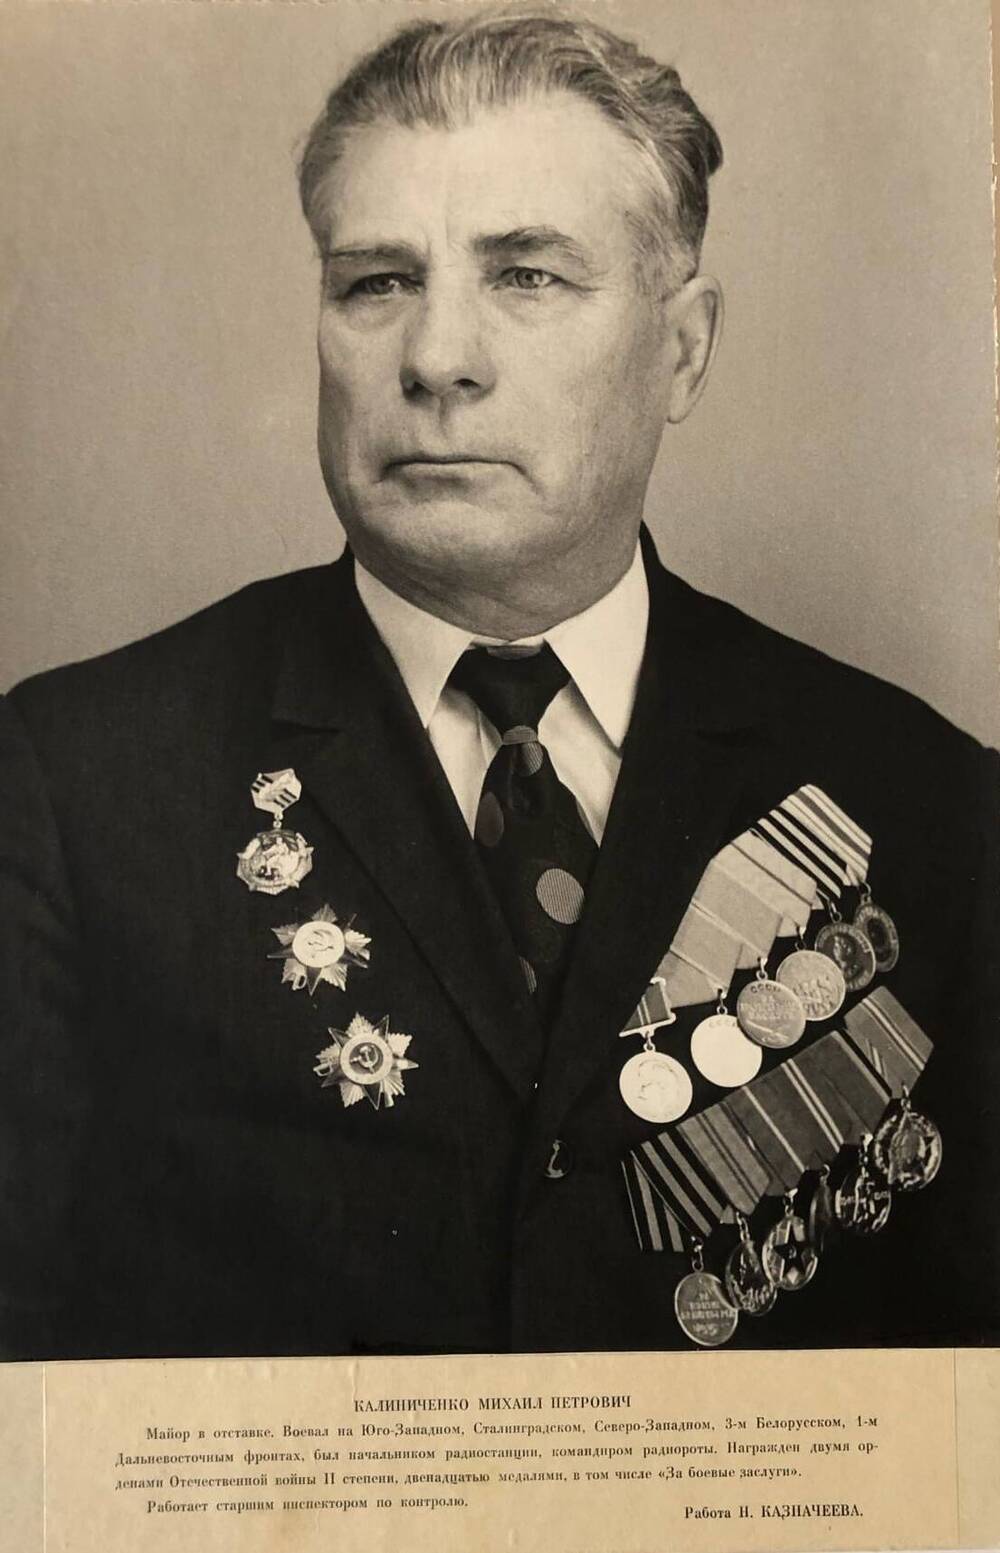 Фотография Калиниченко Михаила Петровича, участника Великой Отечественной войны 1941-1945 гг.